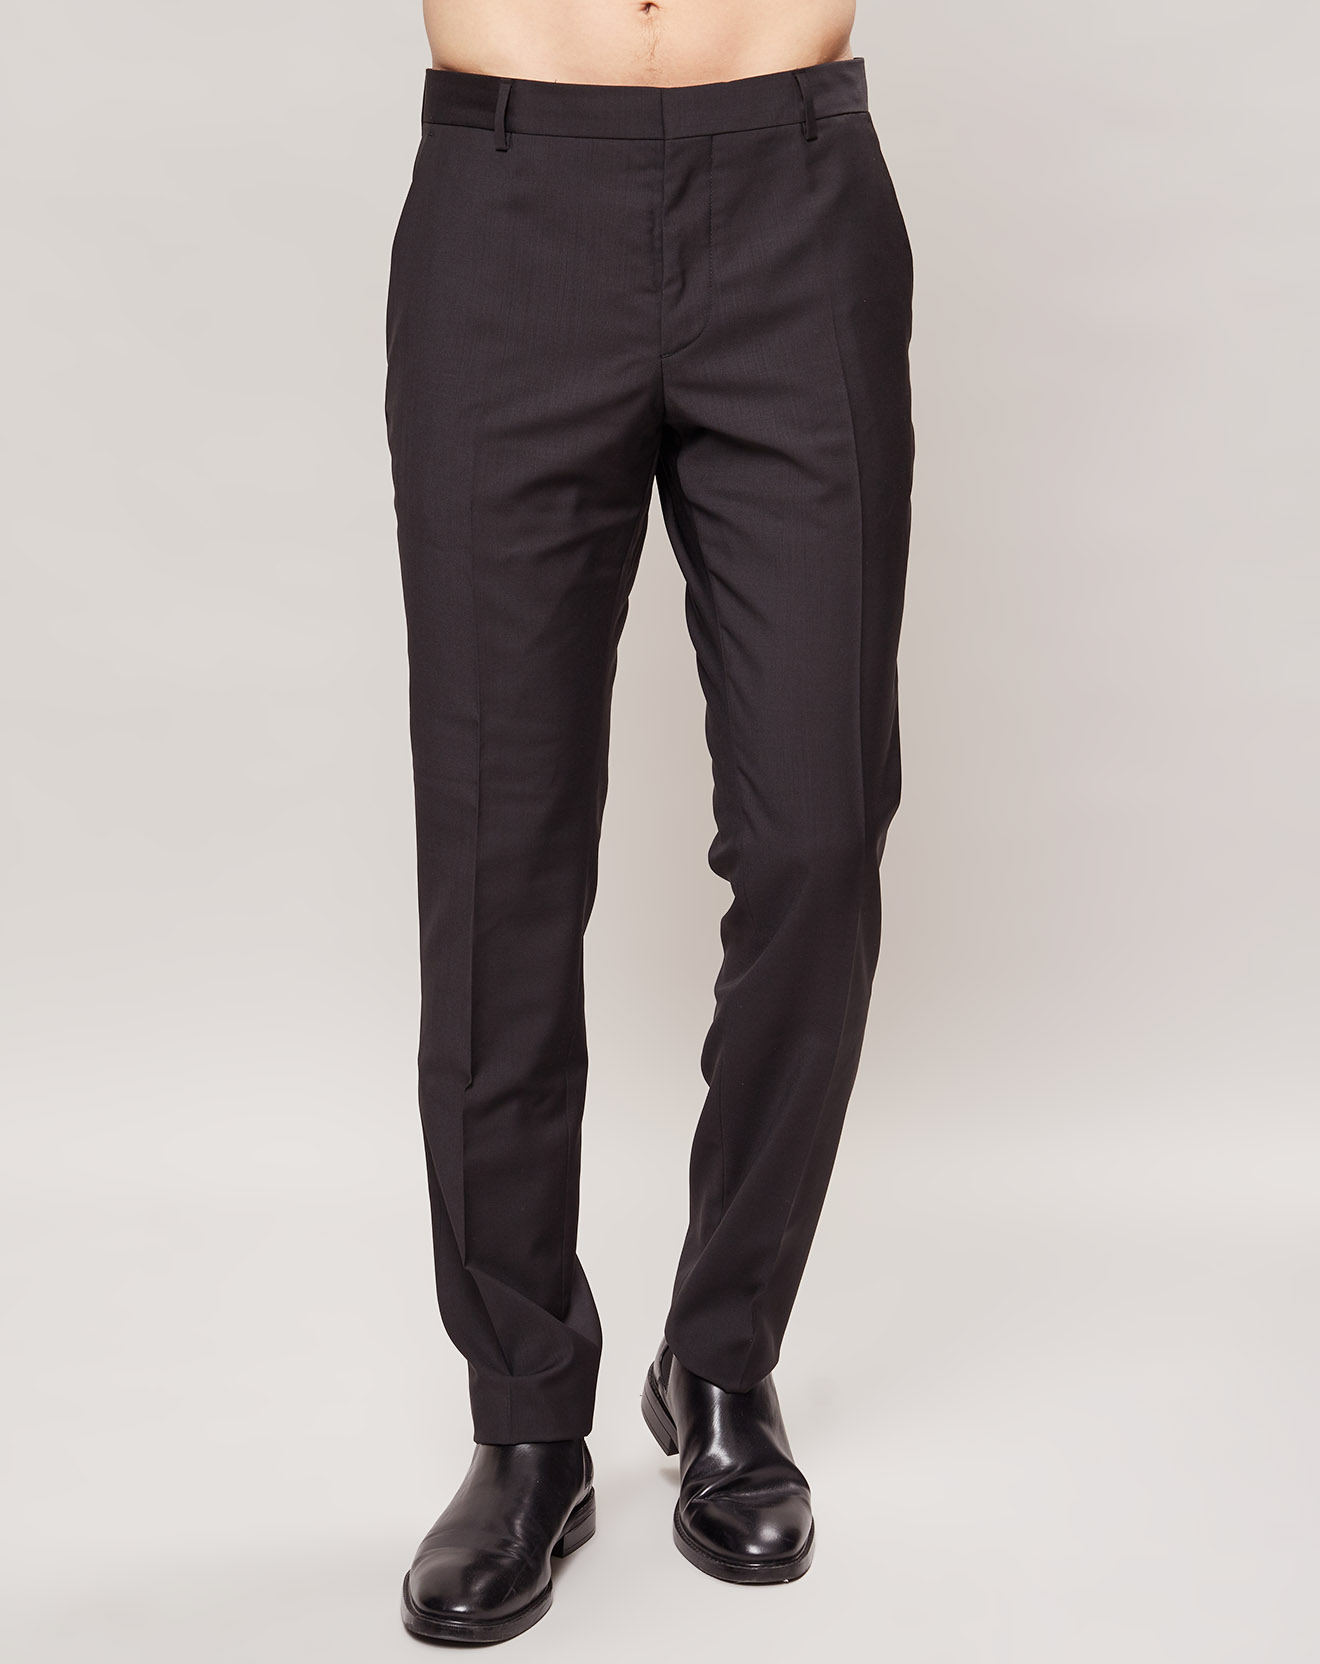 Pantalon 100% Laine fitted Paris-Bm noir